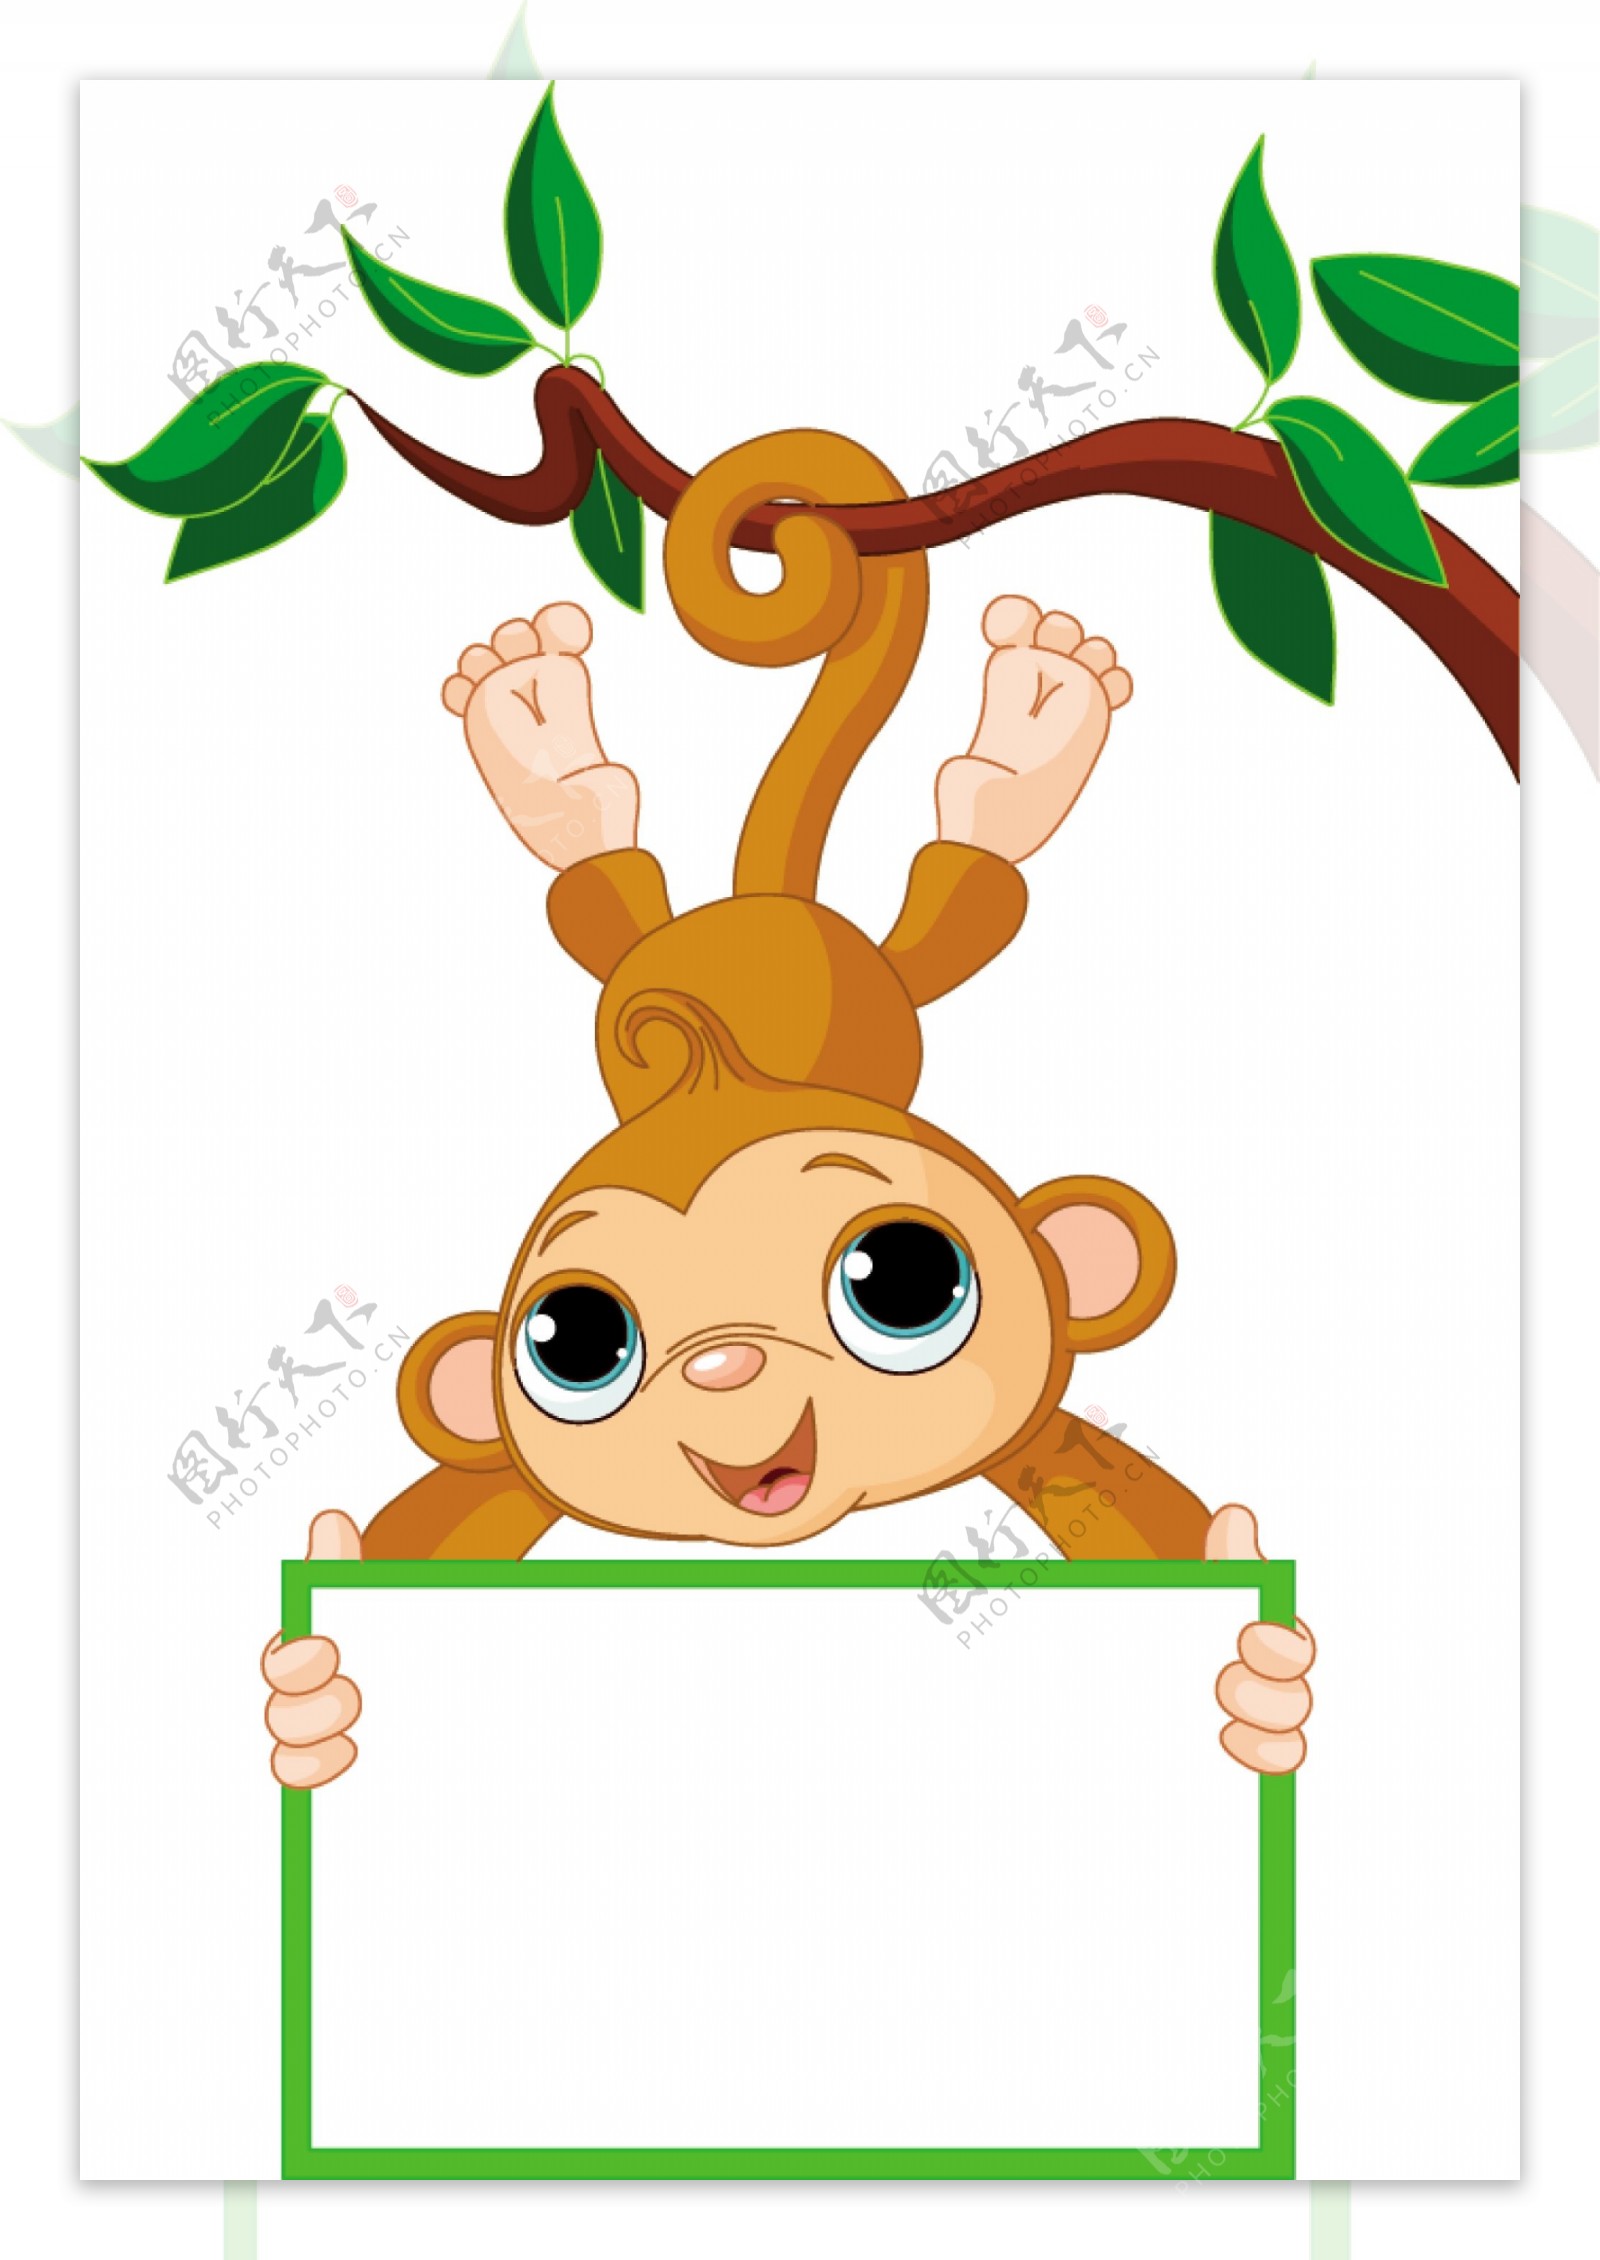 猴子卡通图像02矢量素材